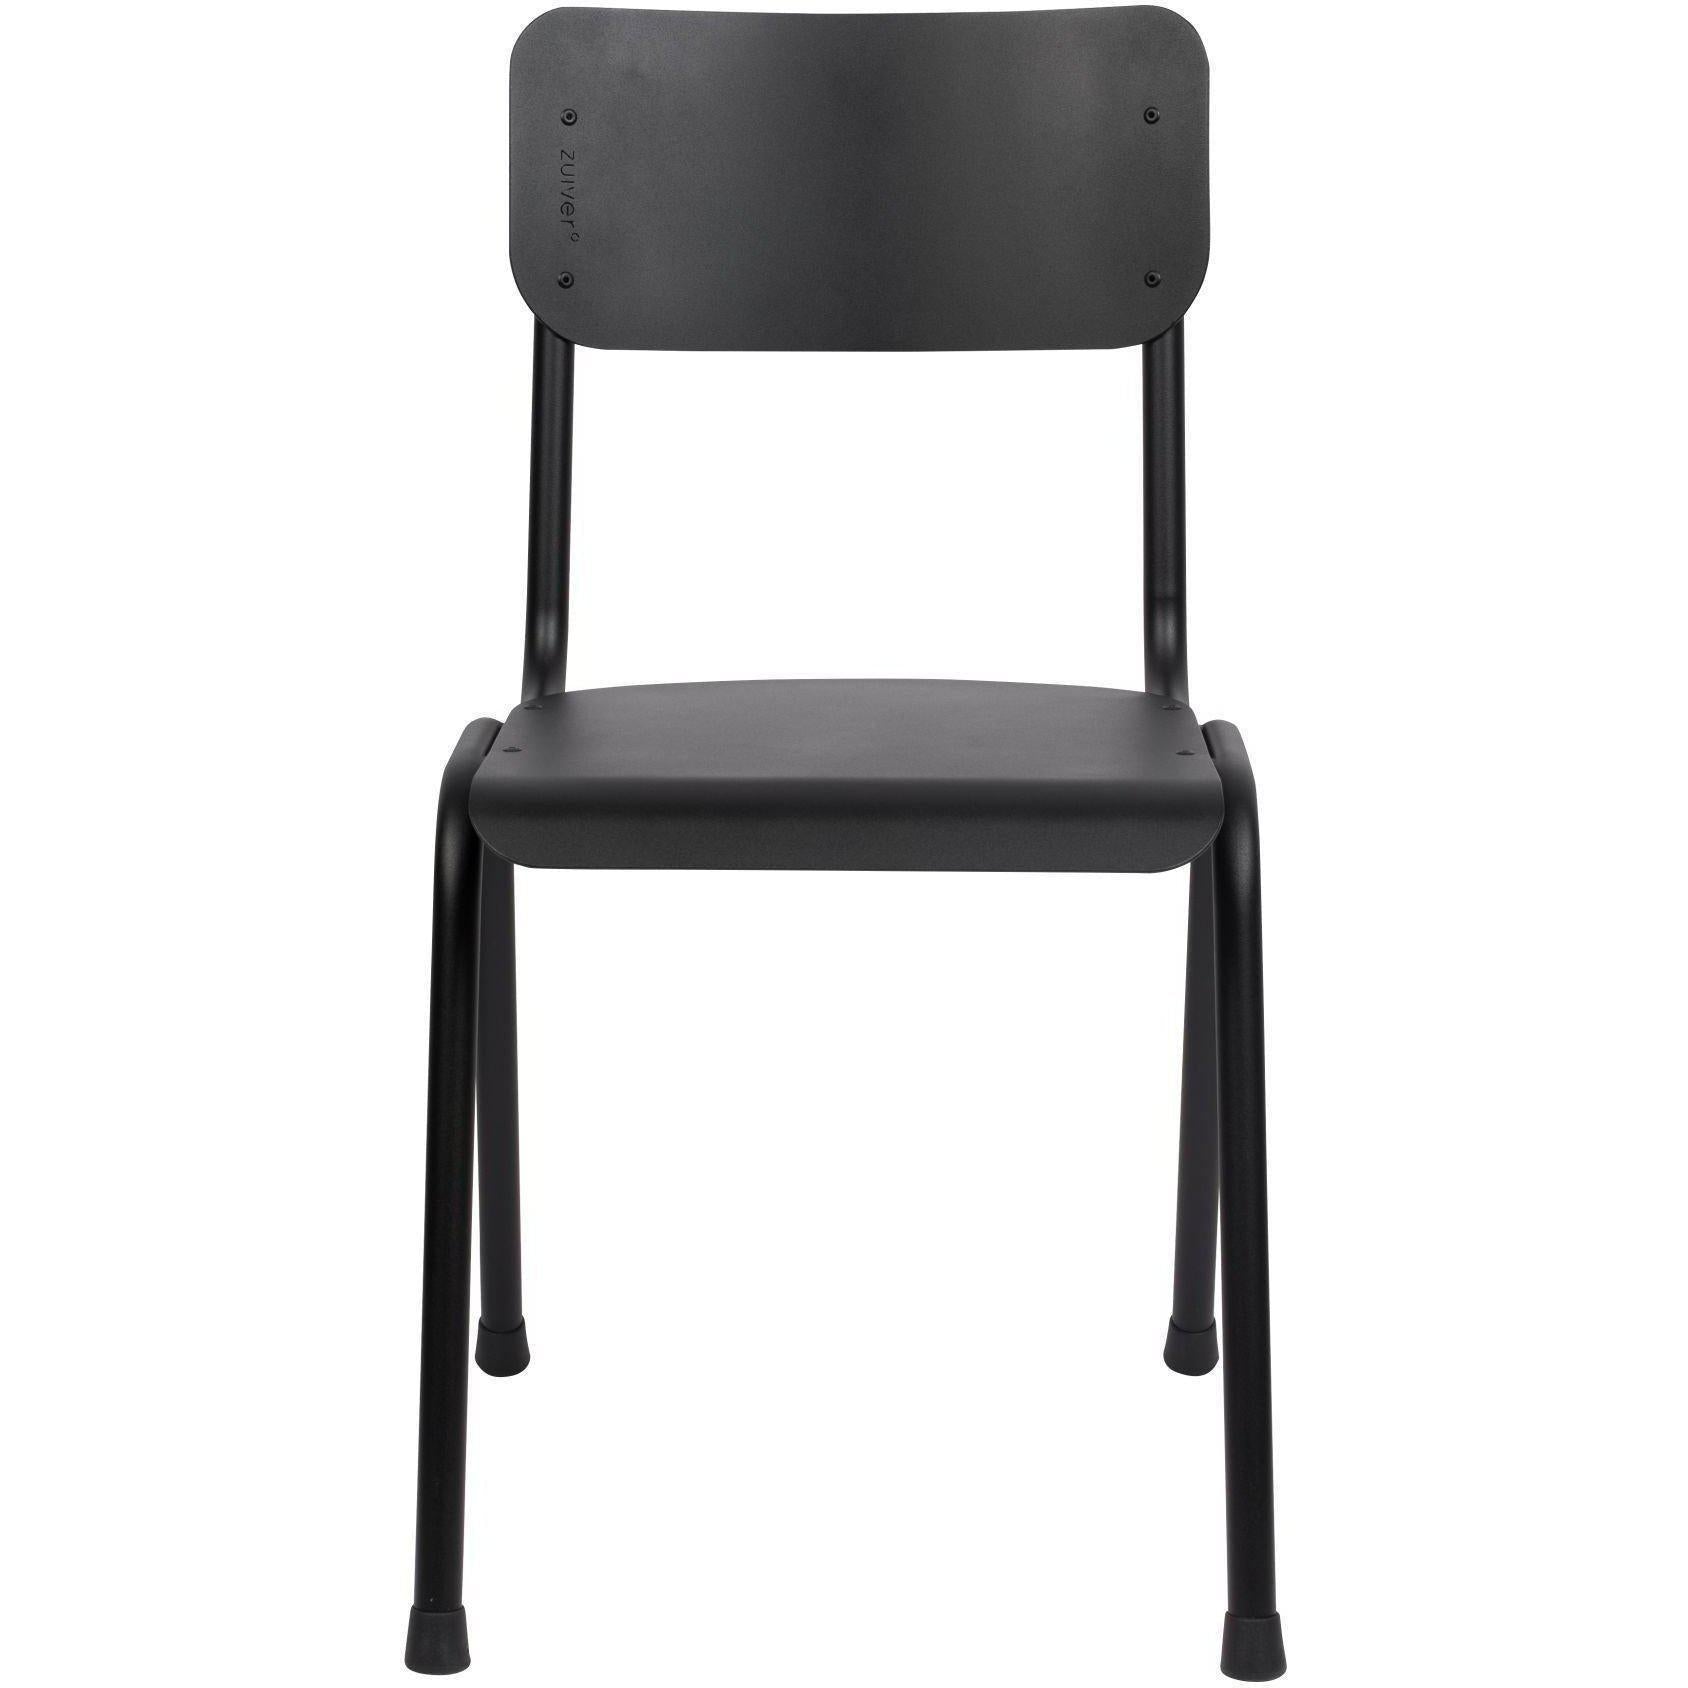 Zuiver Back School stoel outdoor black – HelloChair